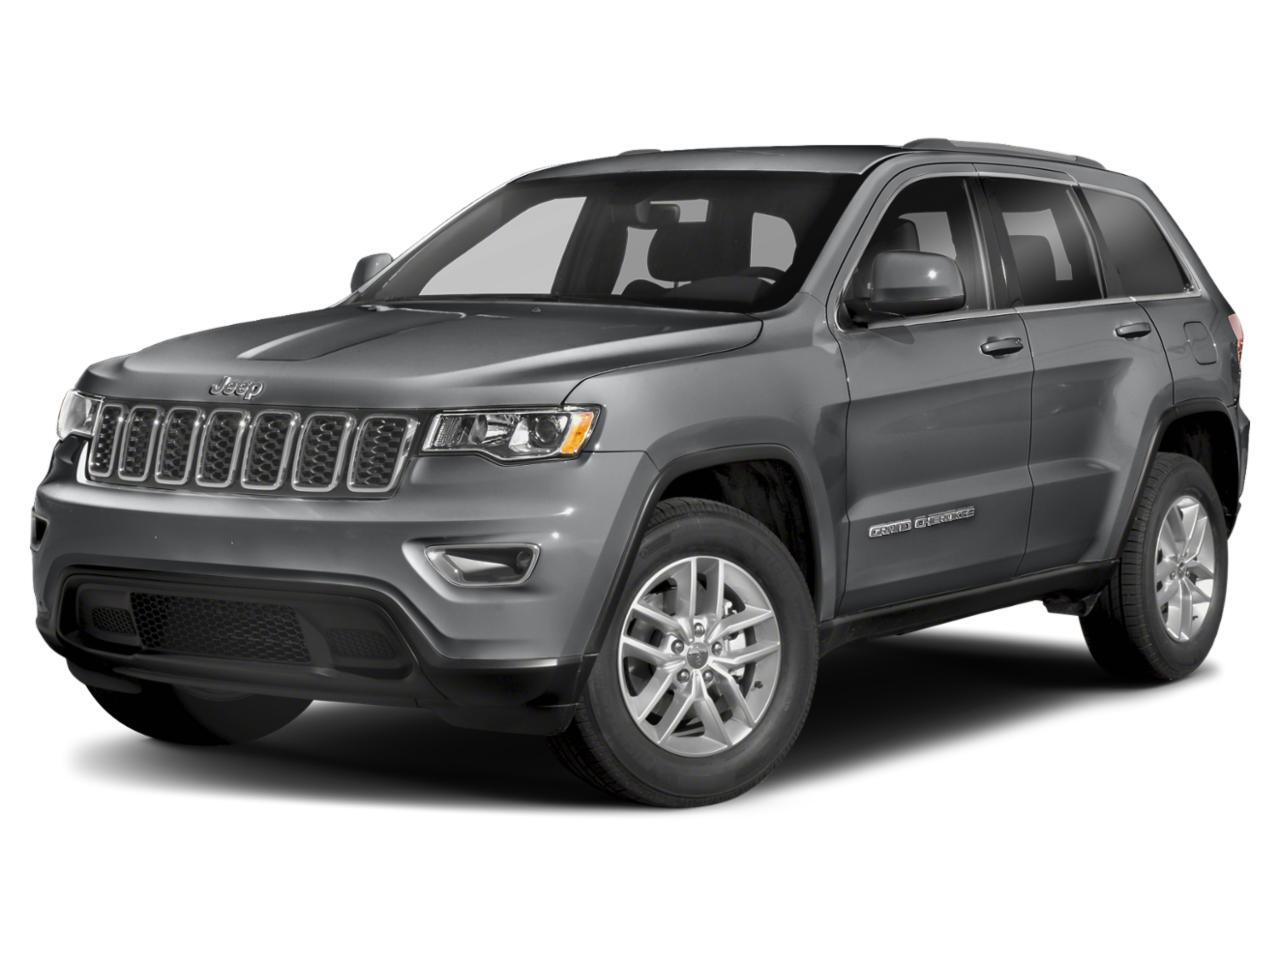 2020 Jeep Grand Cherokee 4x4 Laredo $264bw, Heated Front Seats, Autostart